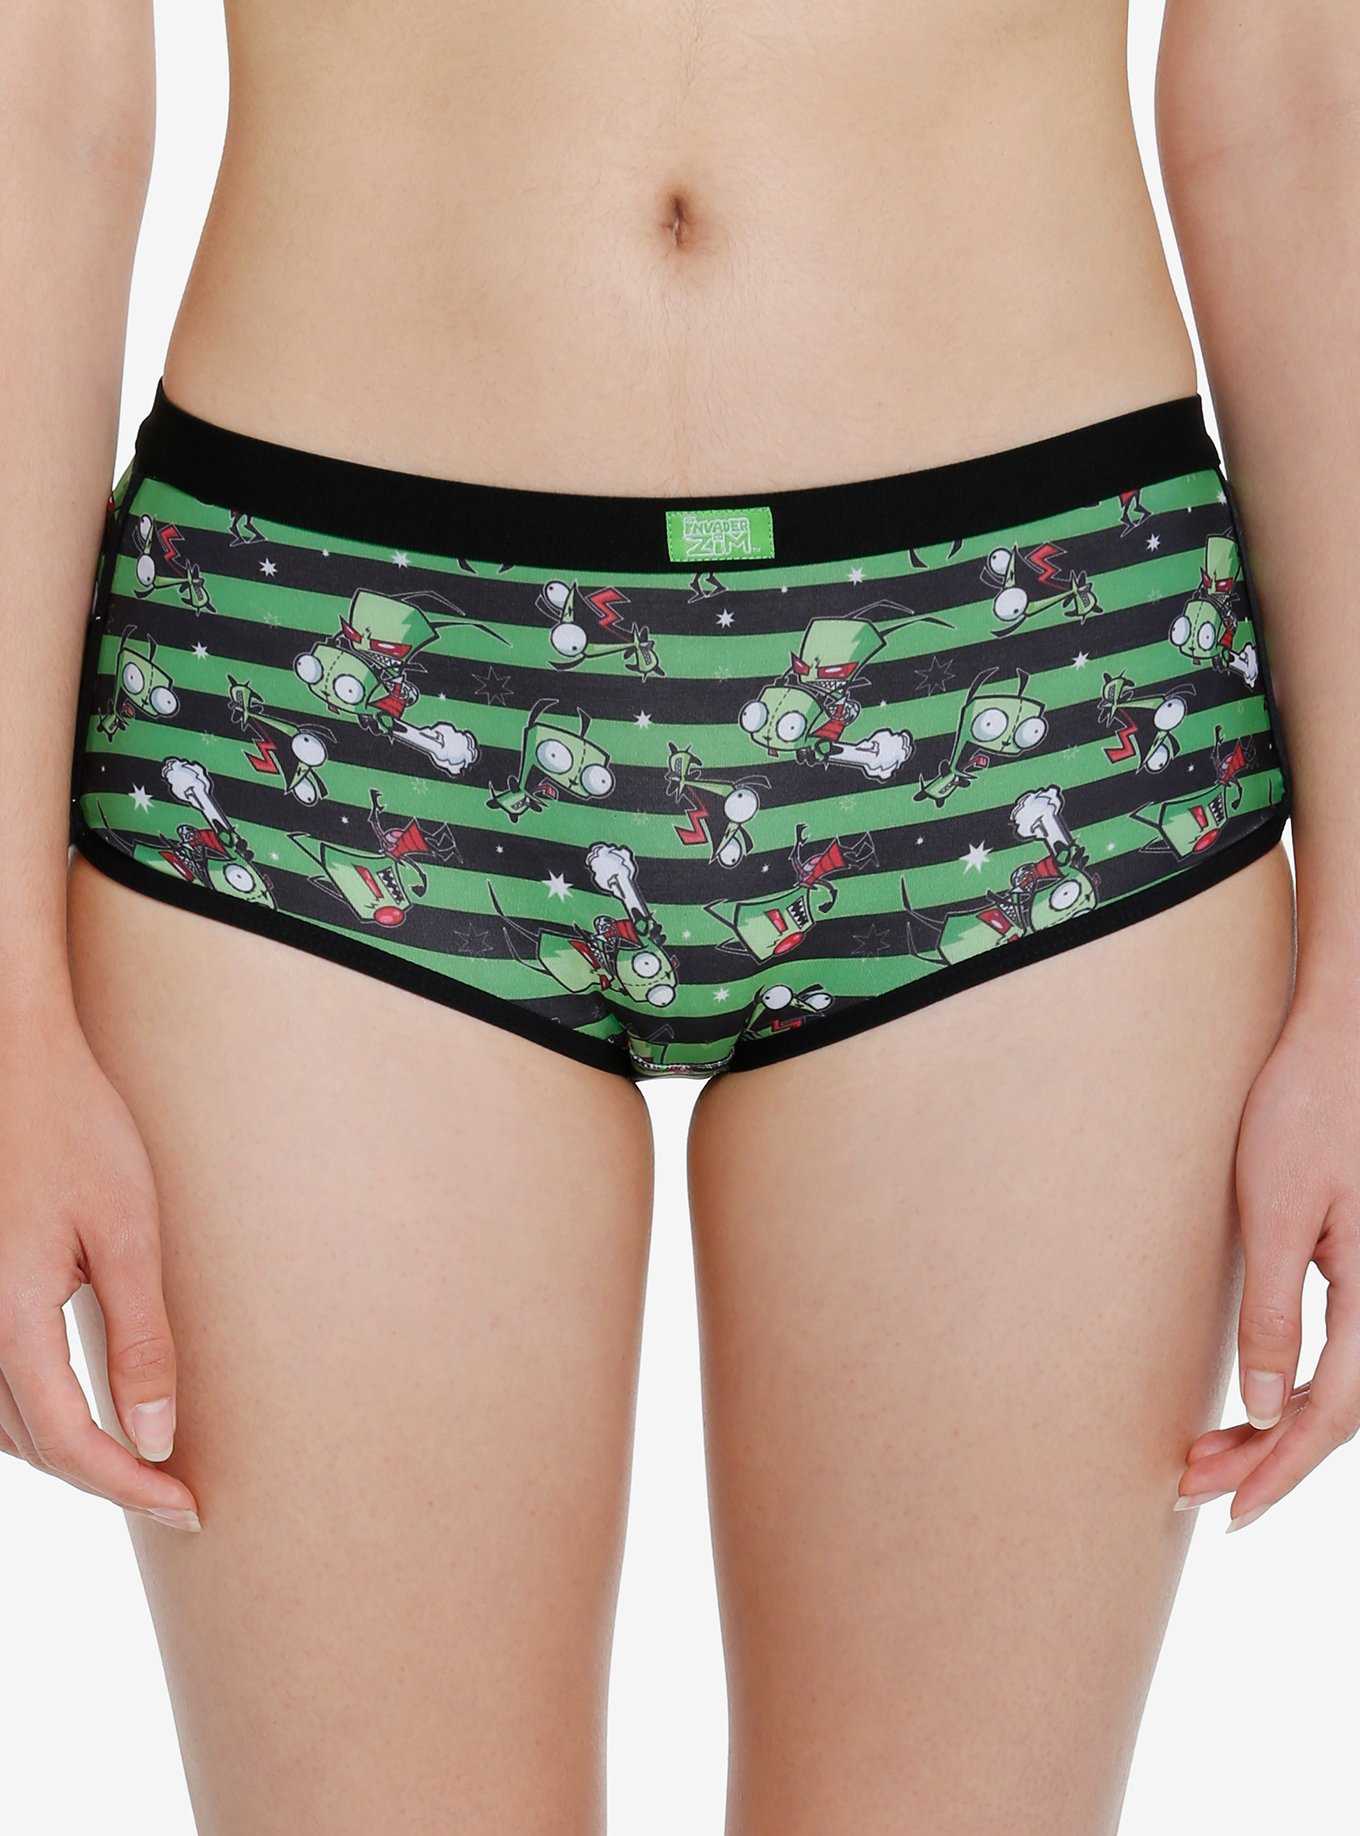 Pigs Animal Meme Underpants Homme Panties Men's Underwear Sexy